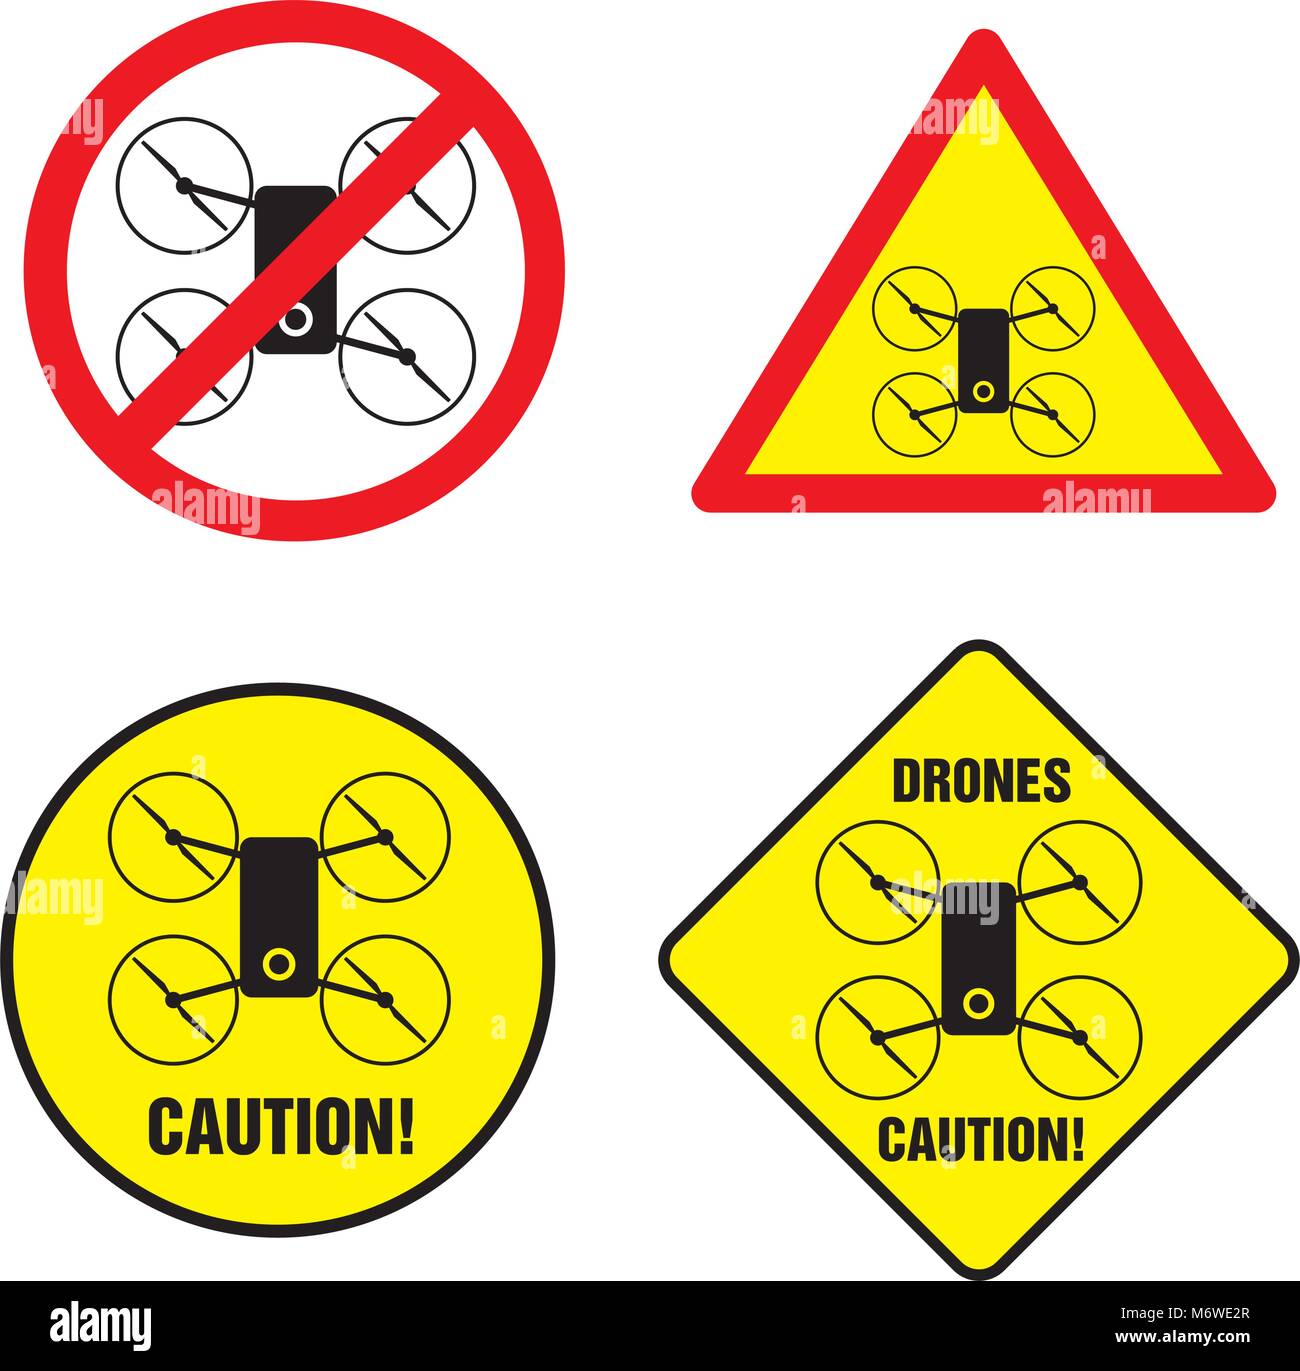 Drone warning sign Banque d'images détourées - Alamy